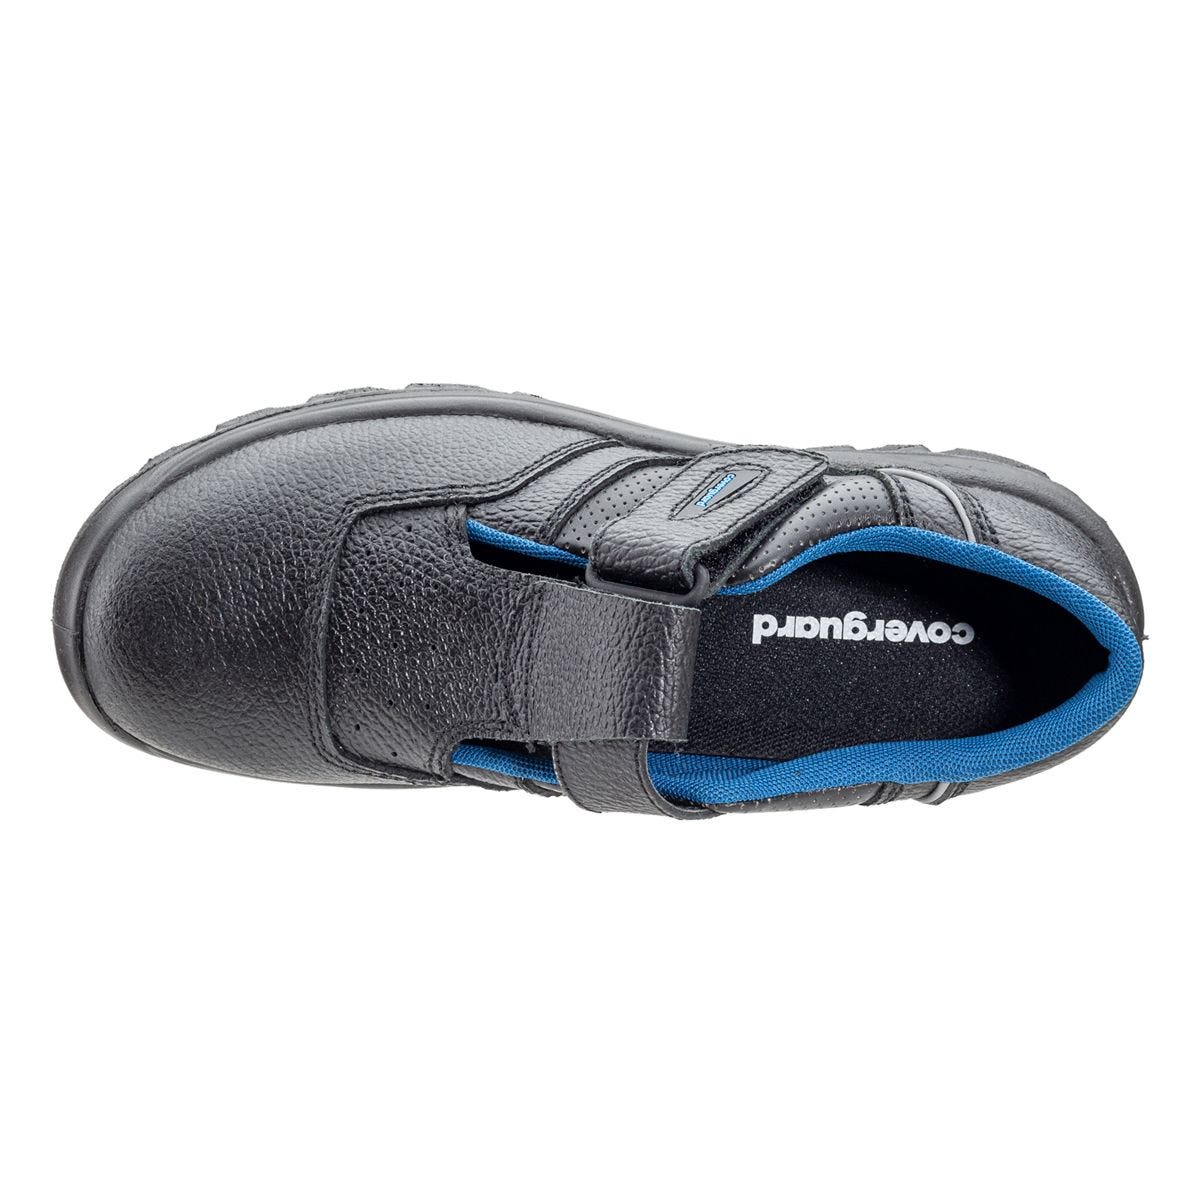 Sandales de sécurité basses Bosco II noir - Coverguard - Taille 36 3